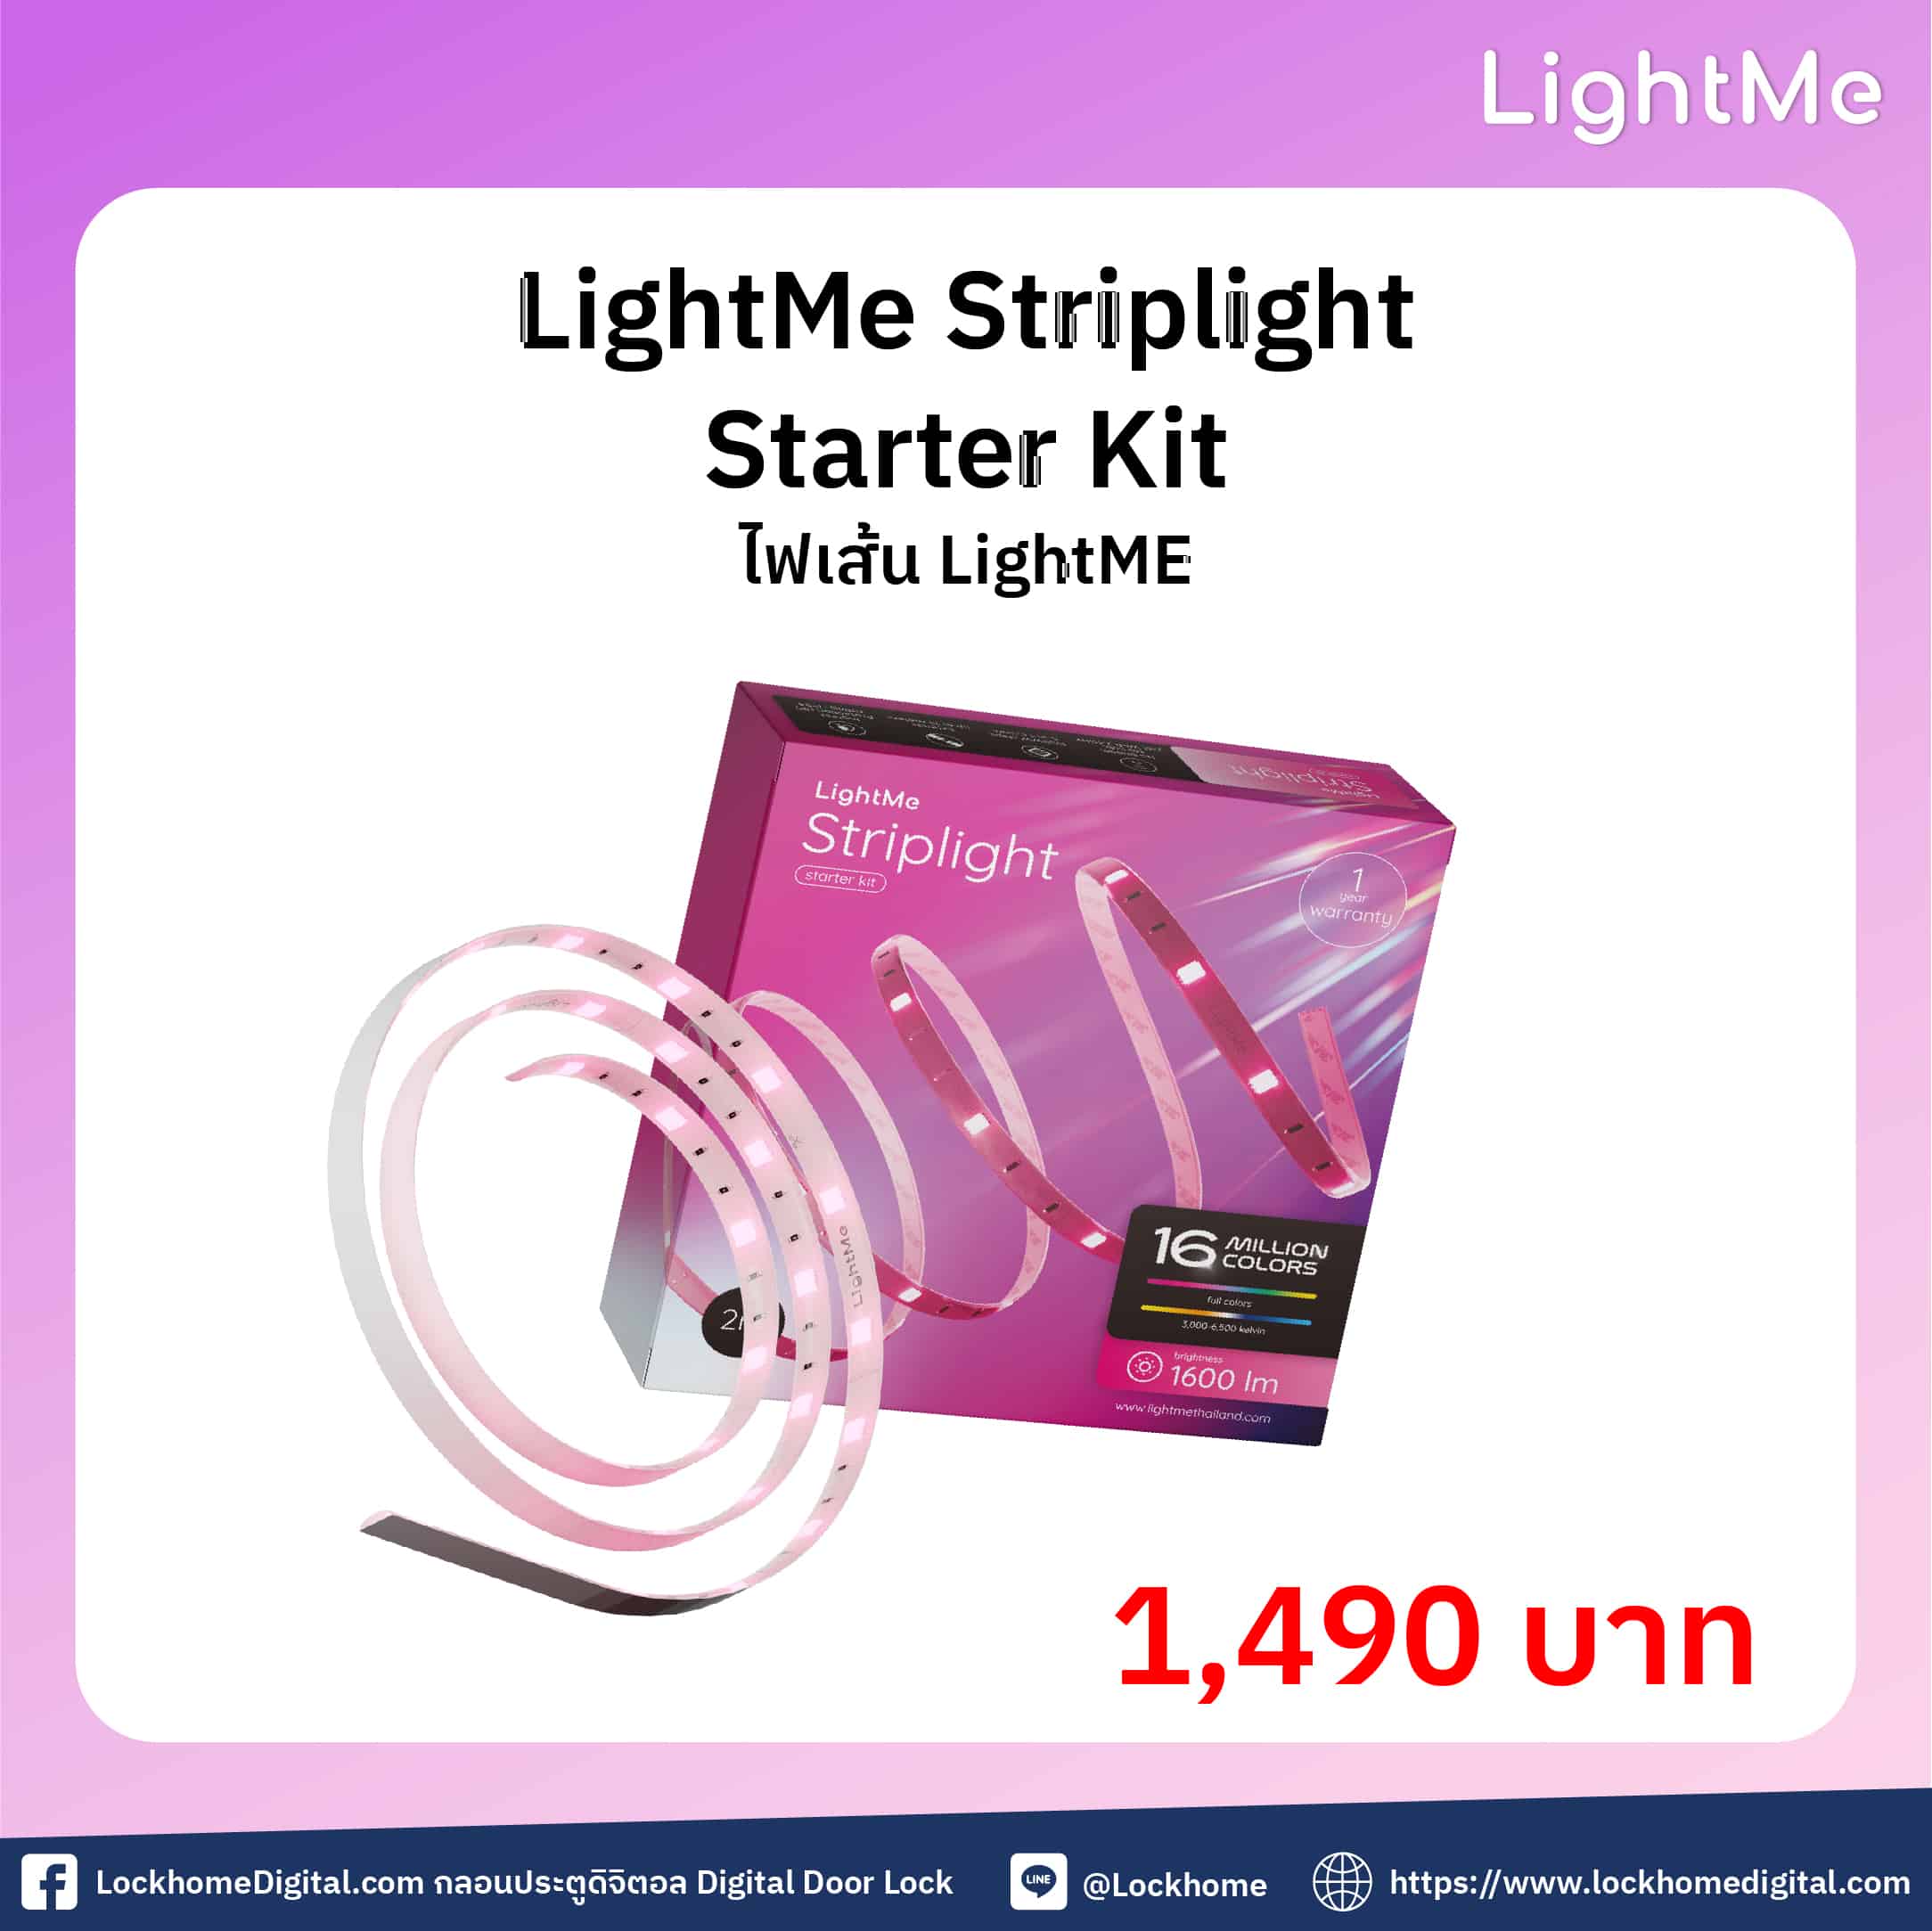 LightMe Striplight Starter Kit